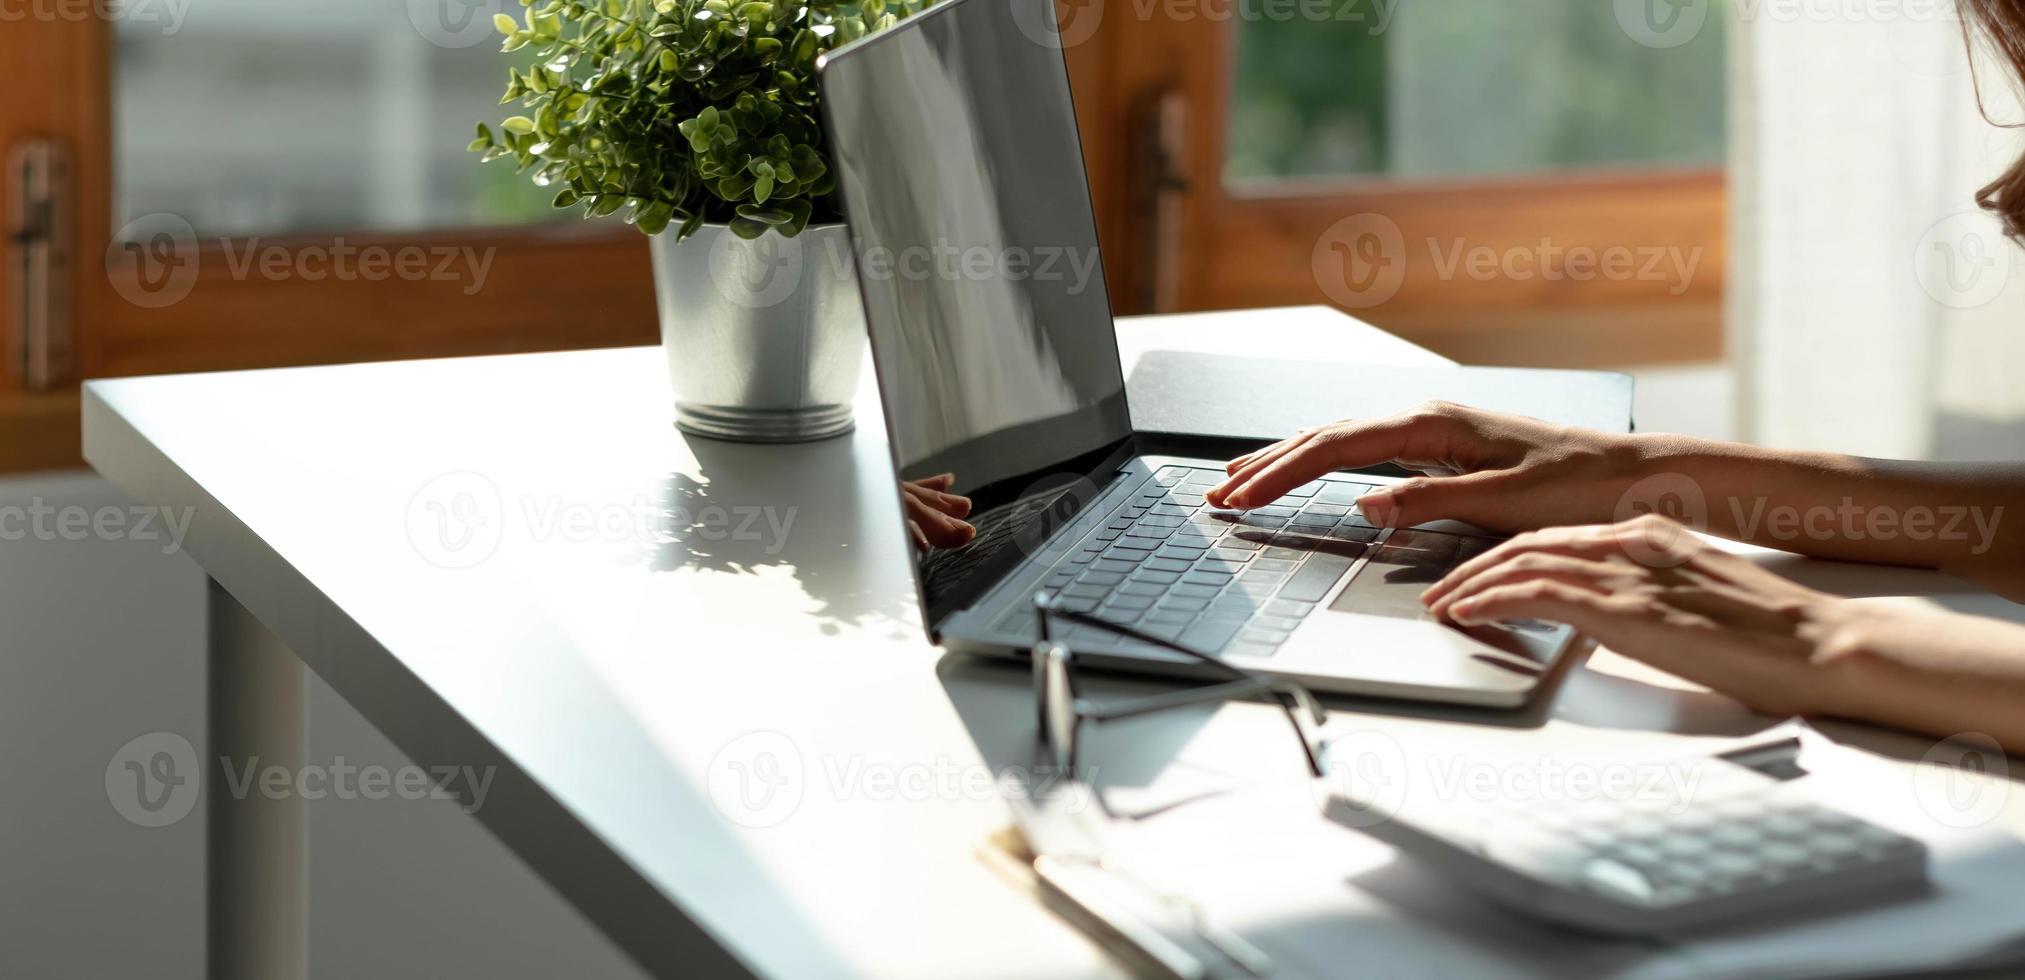 asiatisk kvinna kontrollerar onlinebeställningsinformation på datorn och använder kreditkortsinformationen som anges på datorn. foto